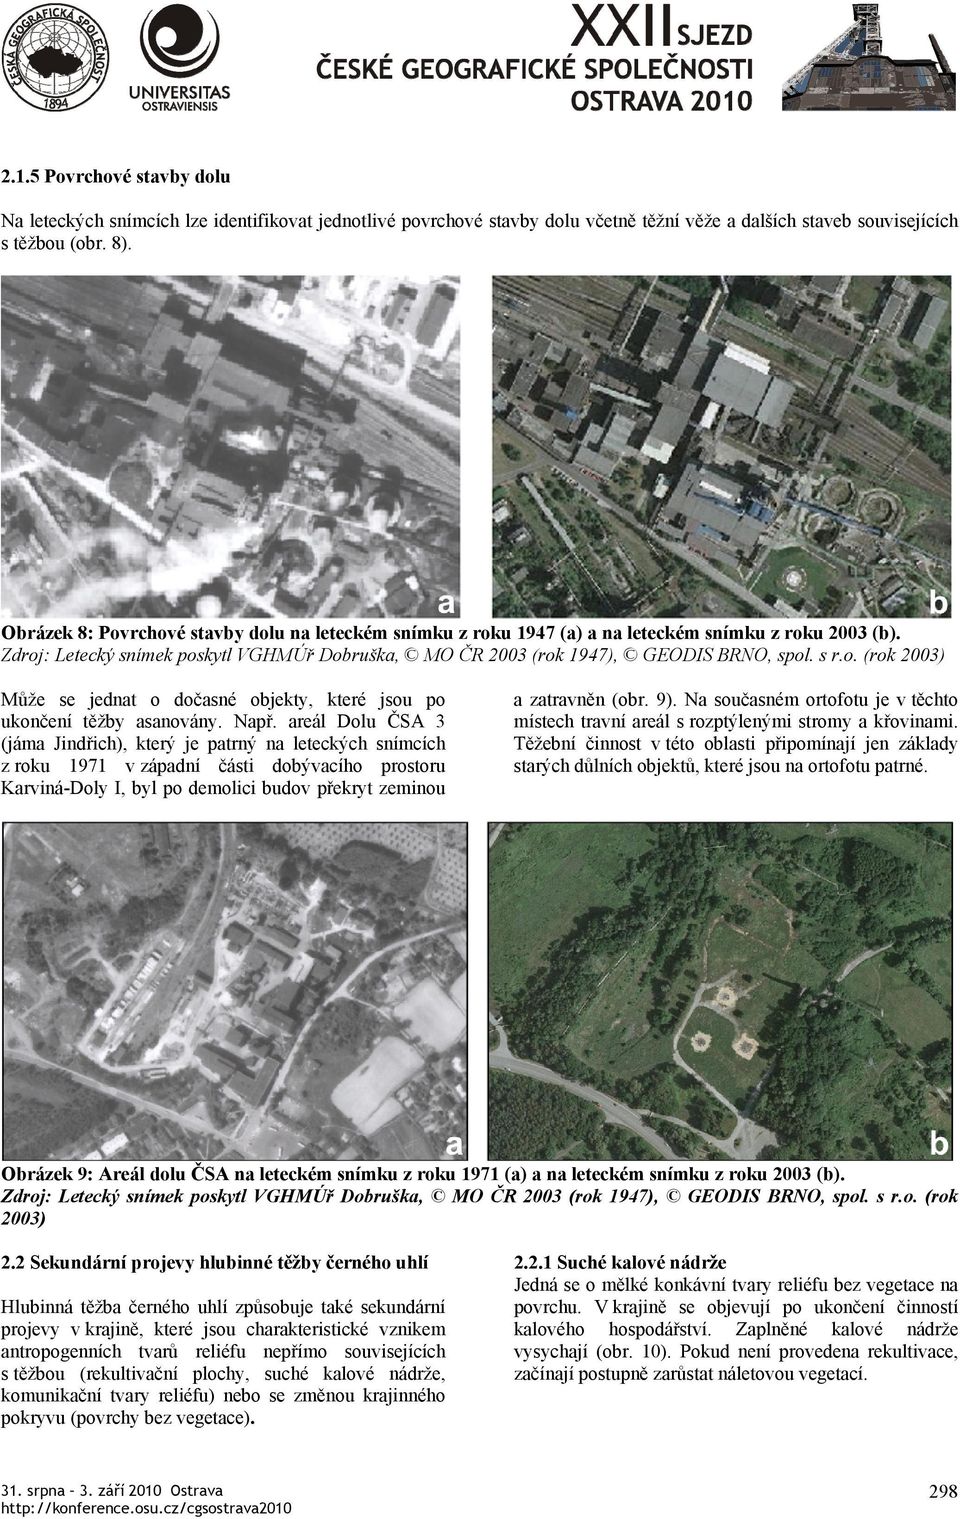 areál Dolu ČSA 3 (jáma Jindřich), který je patrný na leteckých snímcích z roku 1971 v západní části dobývacího prostoru Karviná-Doly I, byl po demolici budov překryt zeminou a zatravněn (obr. 9).